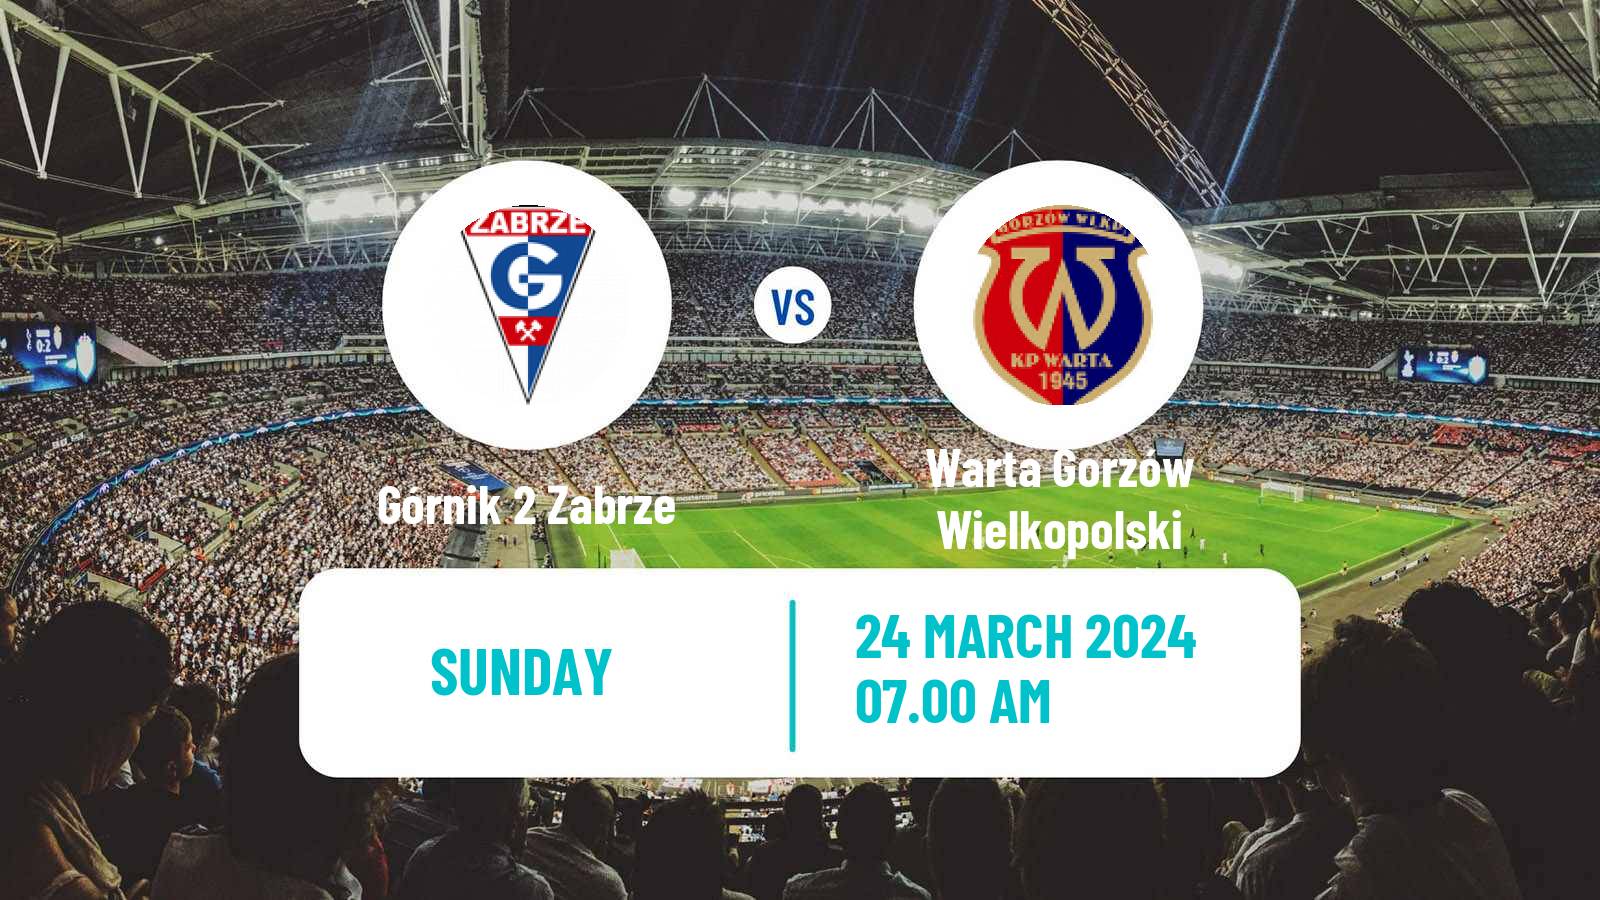 Soccer Polish Division 3 - Group III Górnik 2 Zabrze - Warta Gorzów Wielkopolski